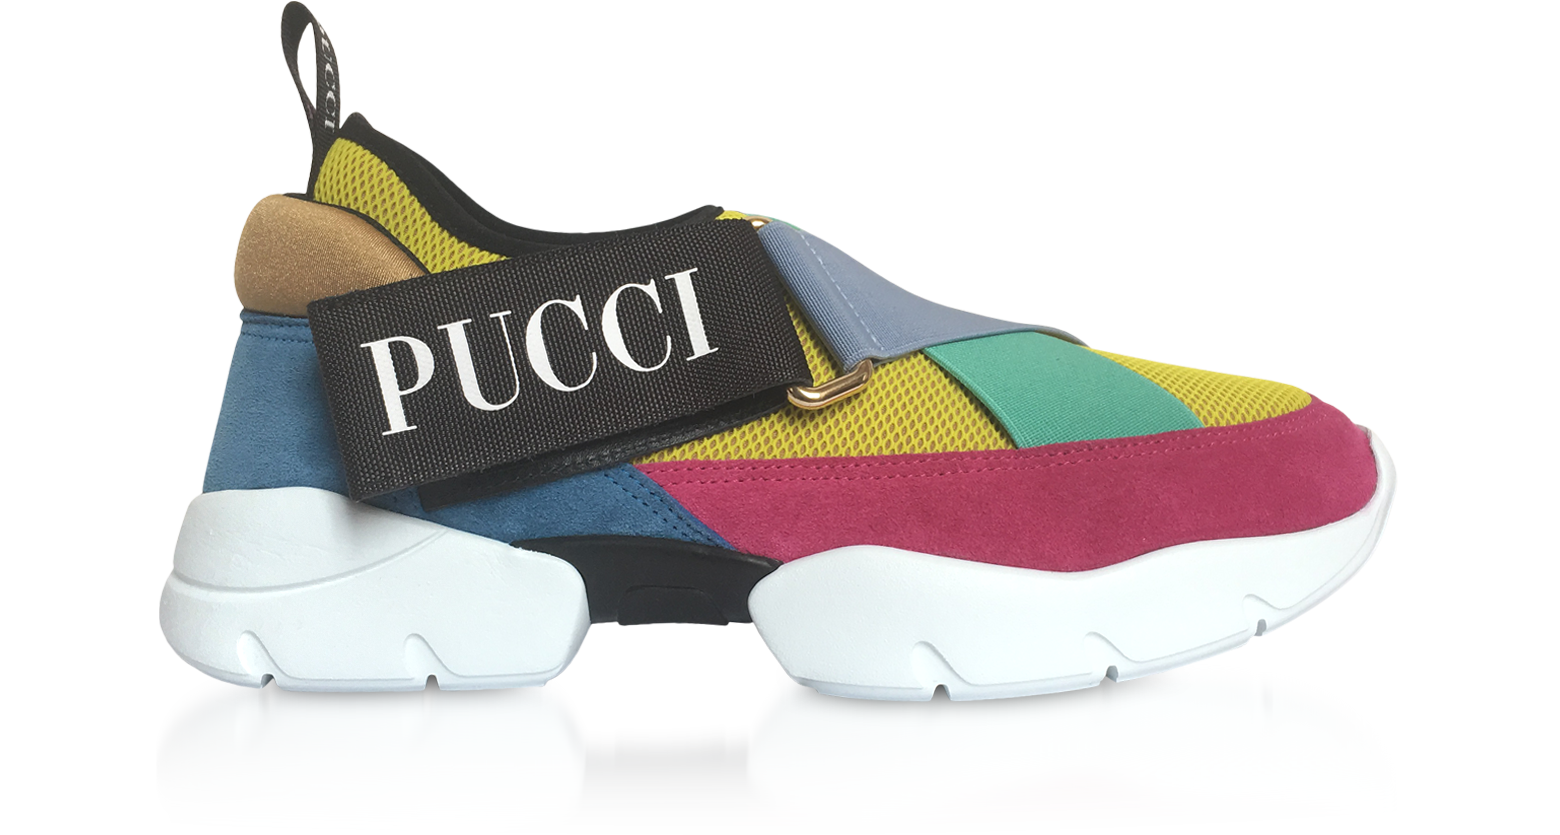 Emilio Pucci Color Block City-Cross Nylon Sneakers 35 IT/EU at FORZIERI